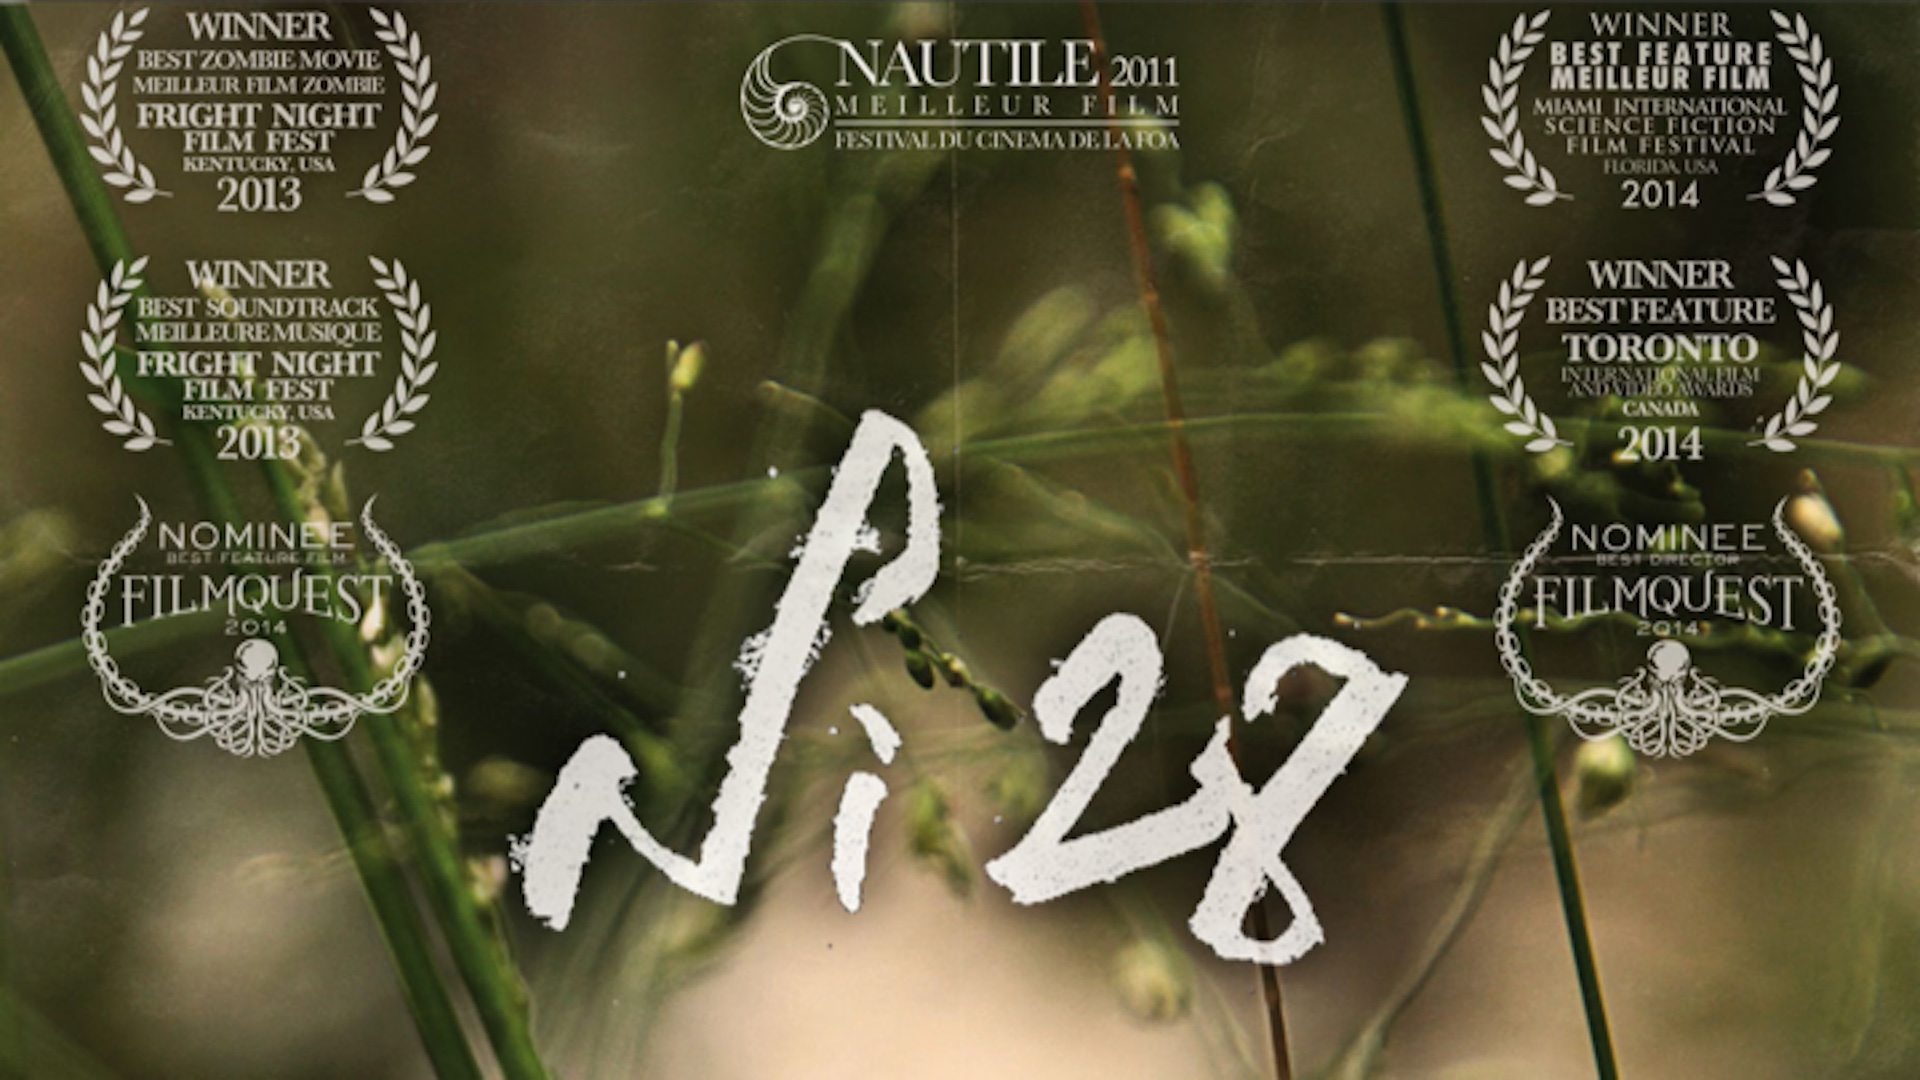 NI 28 STRATE I: Le premier film de zombies made in Nouvelle-Calédonie, le 30 septembre sur Canal+